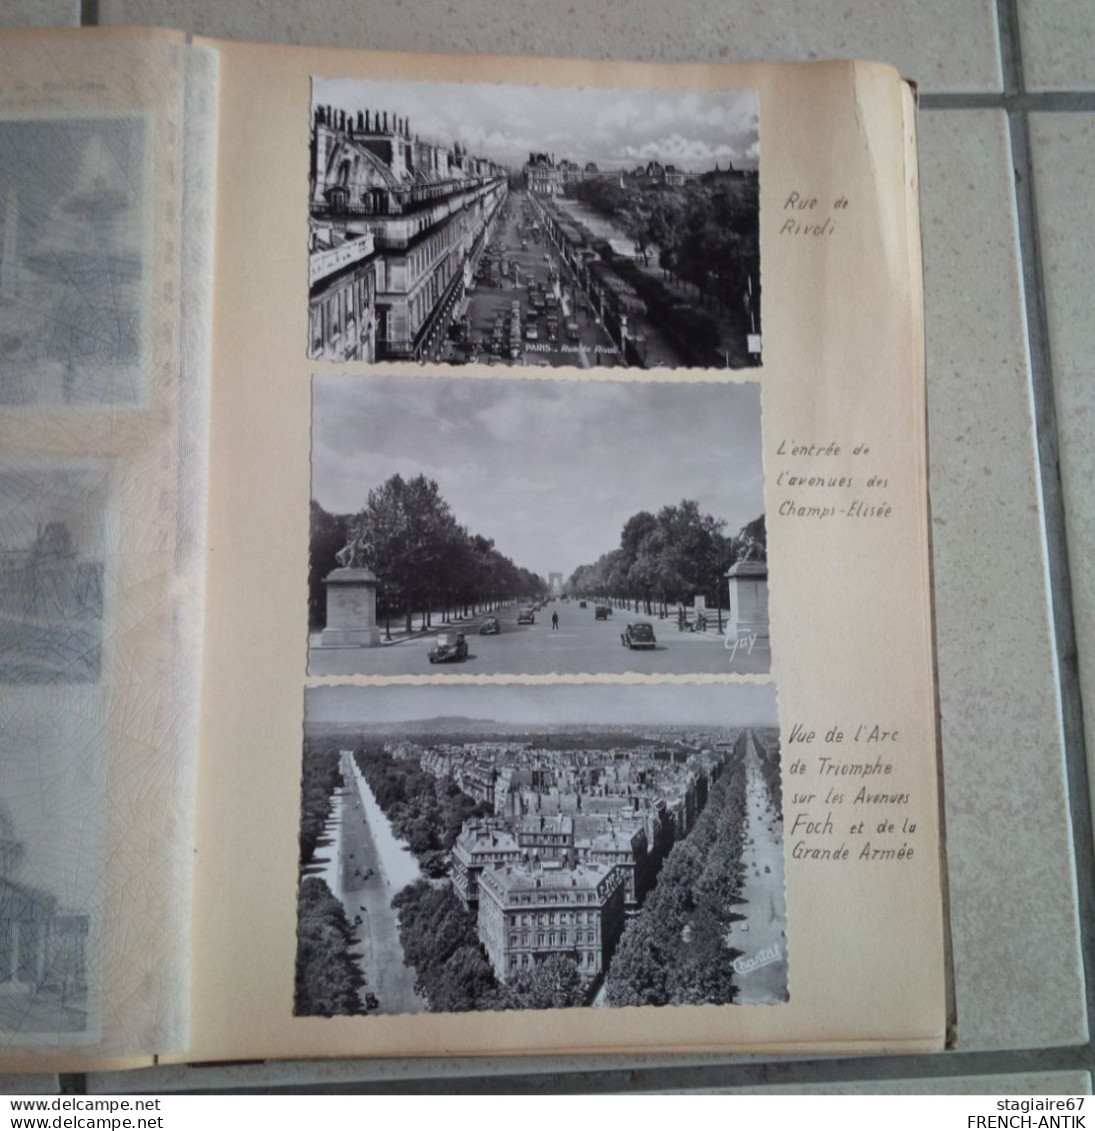 ALBUM PHOTO PARIS MONUMENTS PHOTO ET CARTE POSTALE 1951